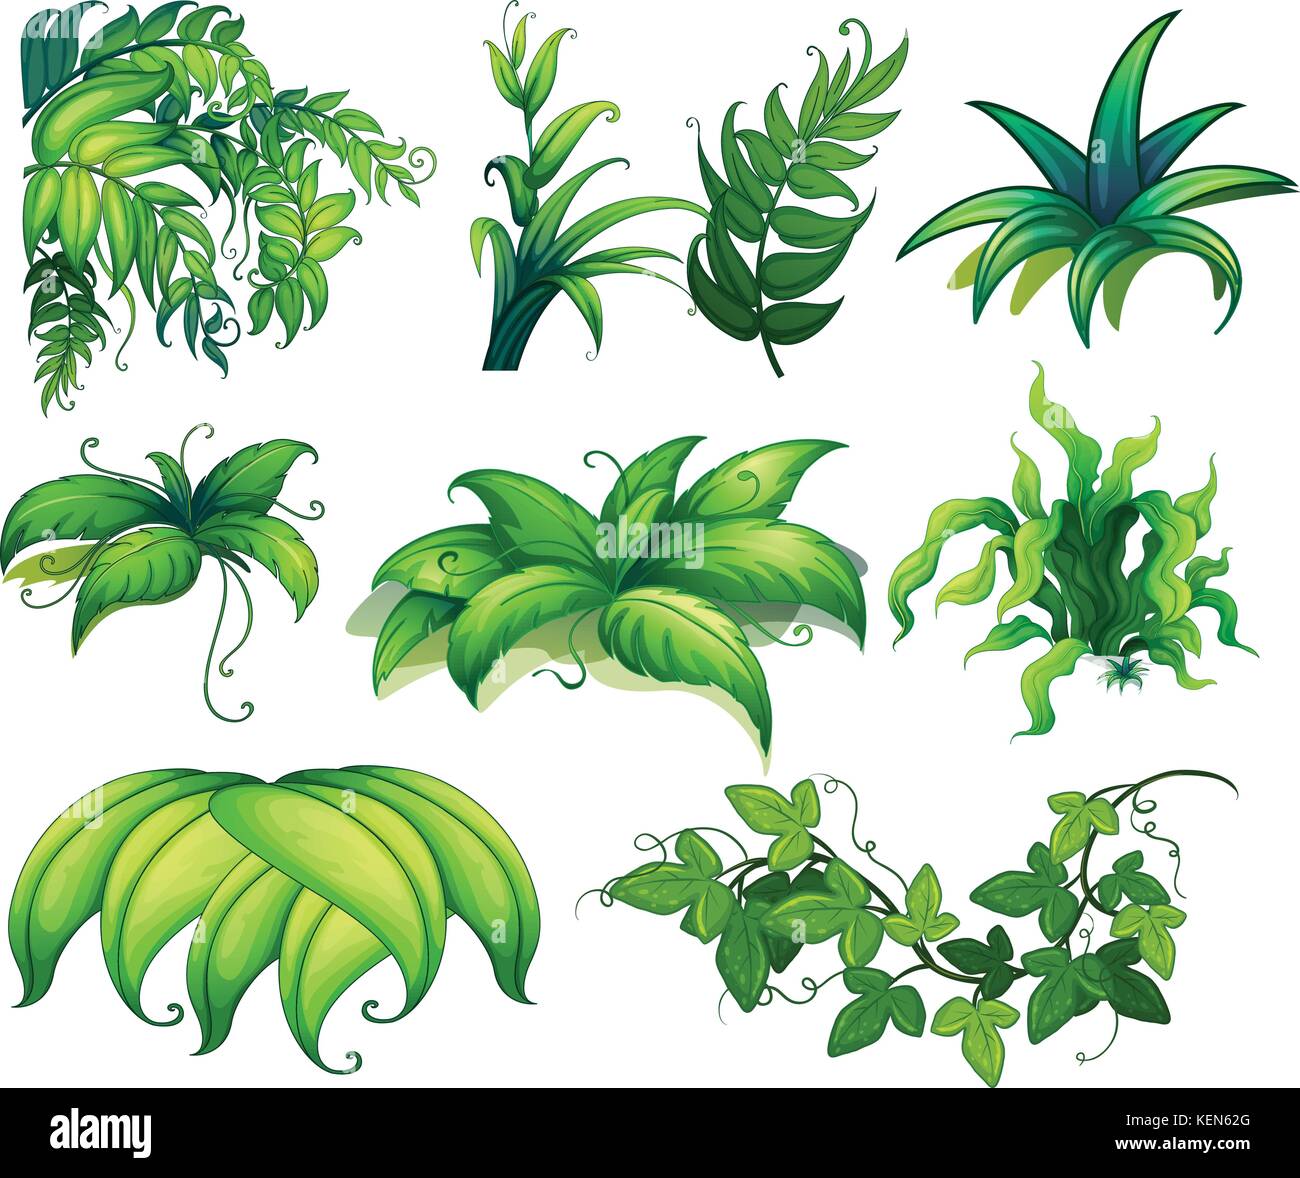 Ilustración de diferentes tipos de plantas Imagen Vector de stock - Alamy